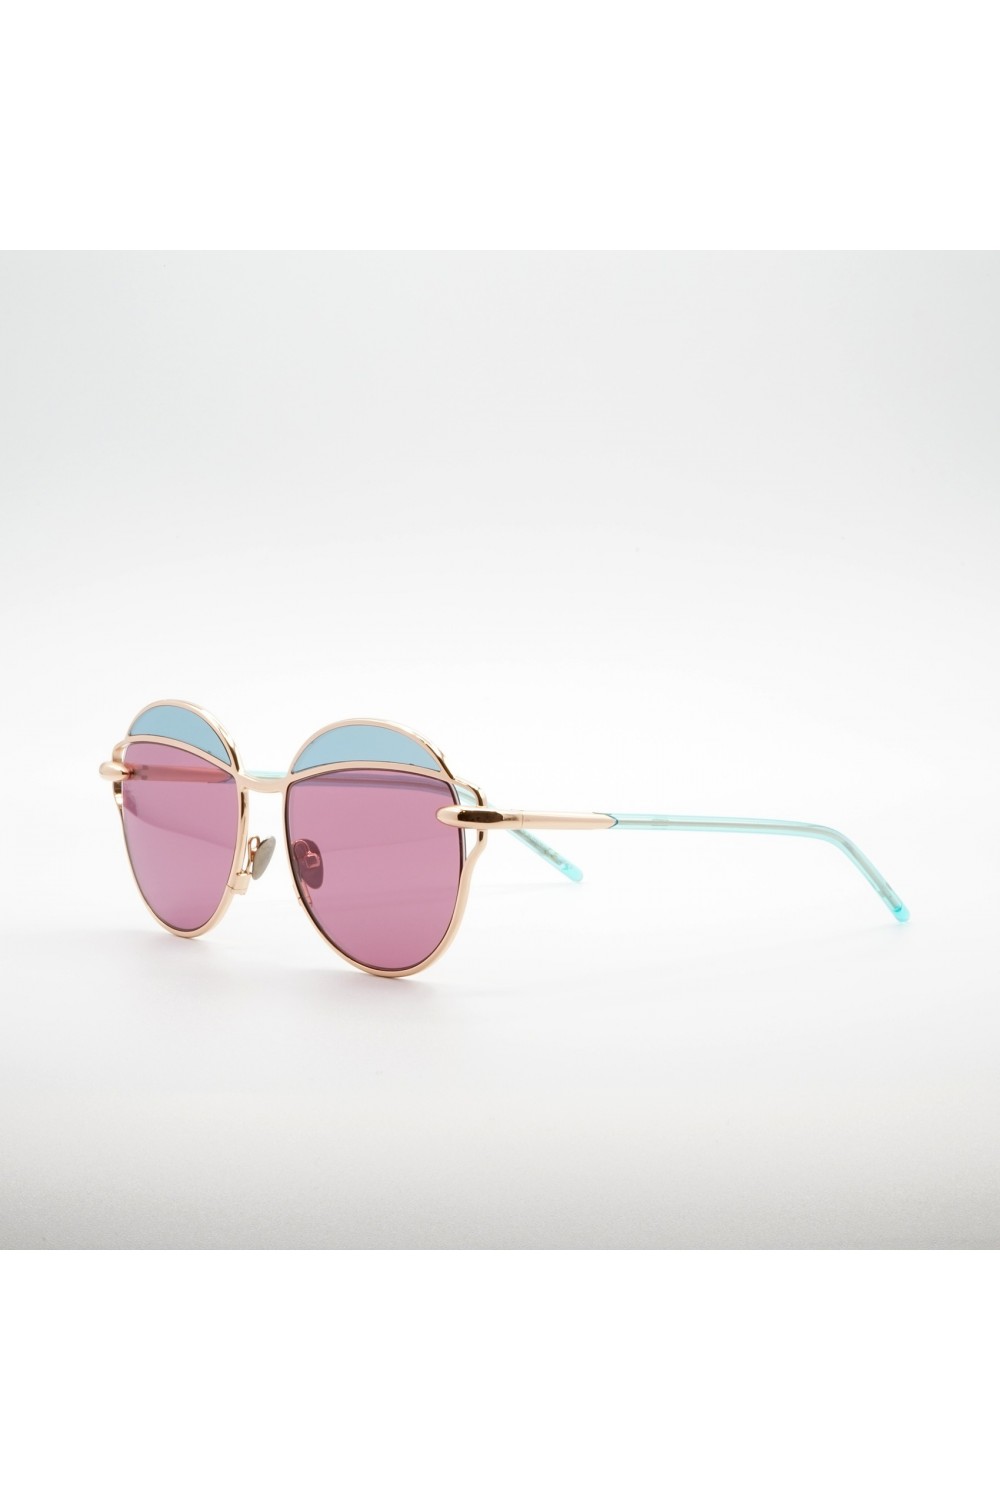 Pomellato - Occhiali da sole tondi in metallo bicolore per donna rosa, celeste